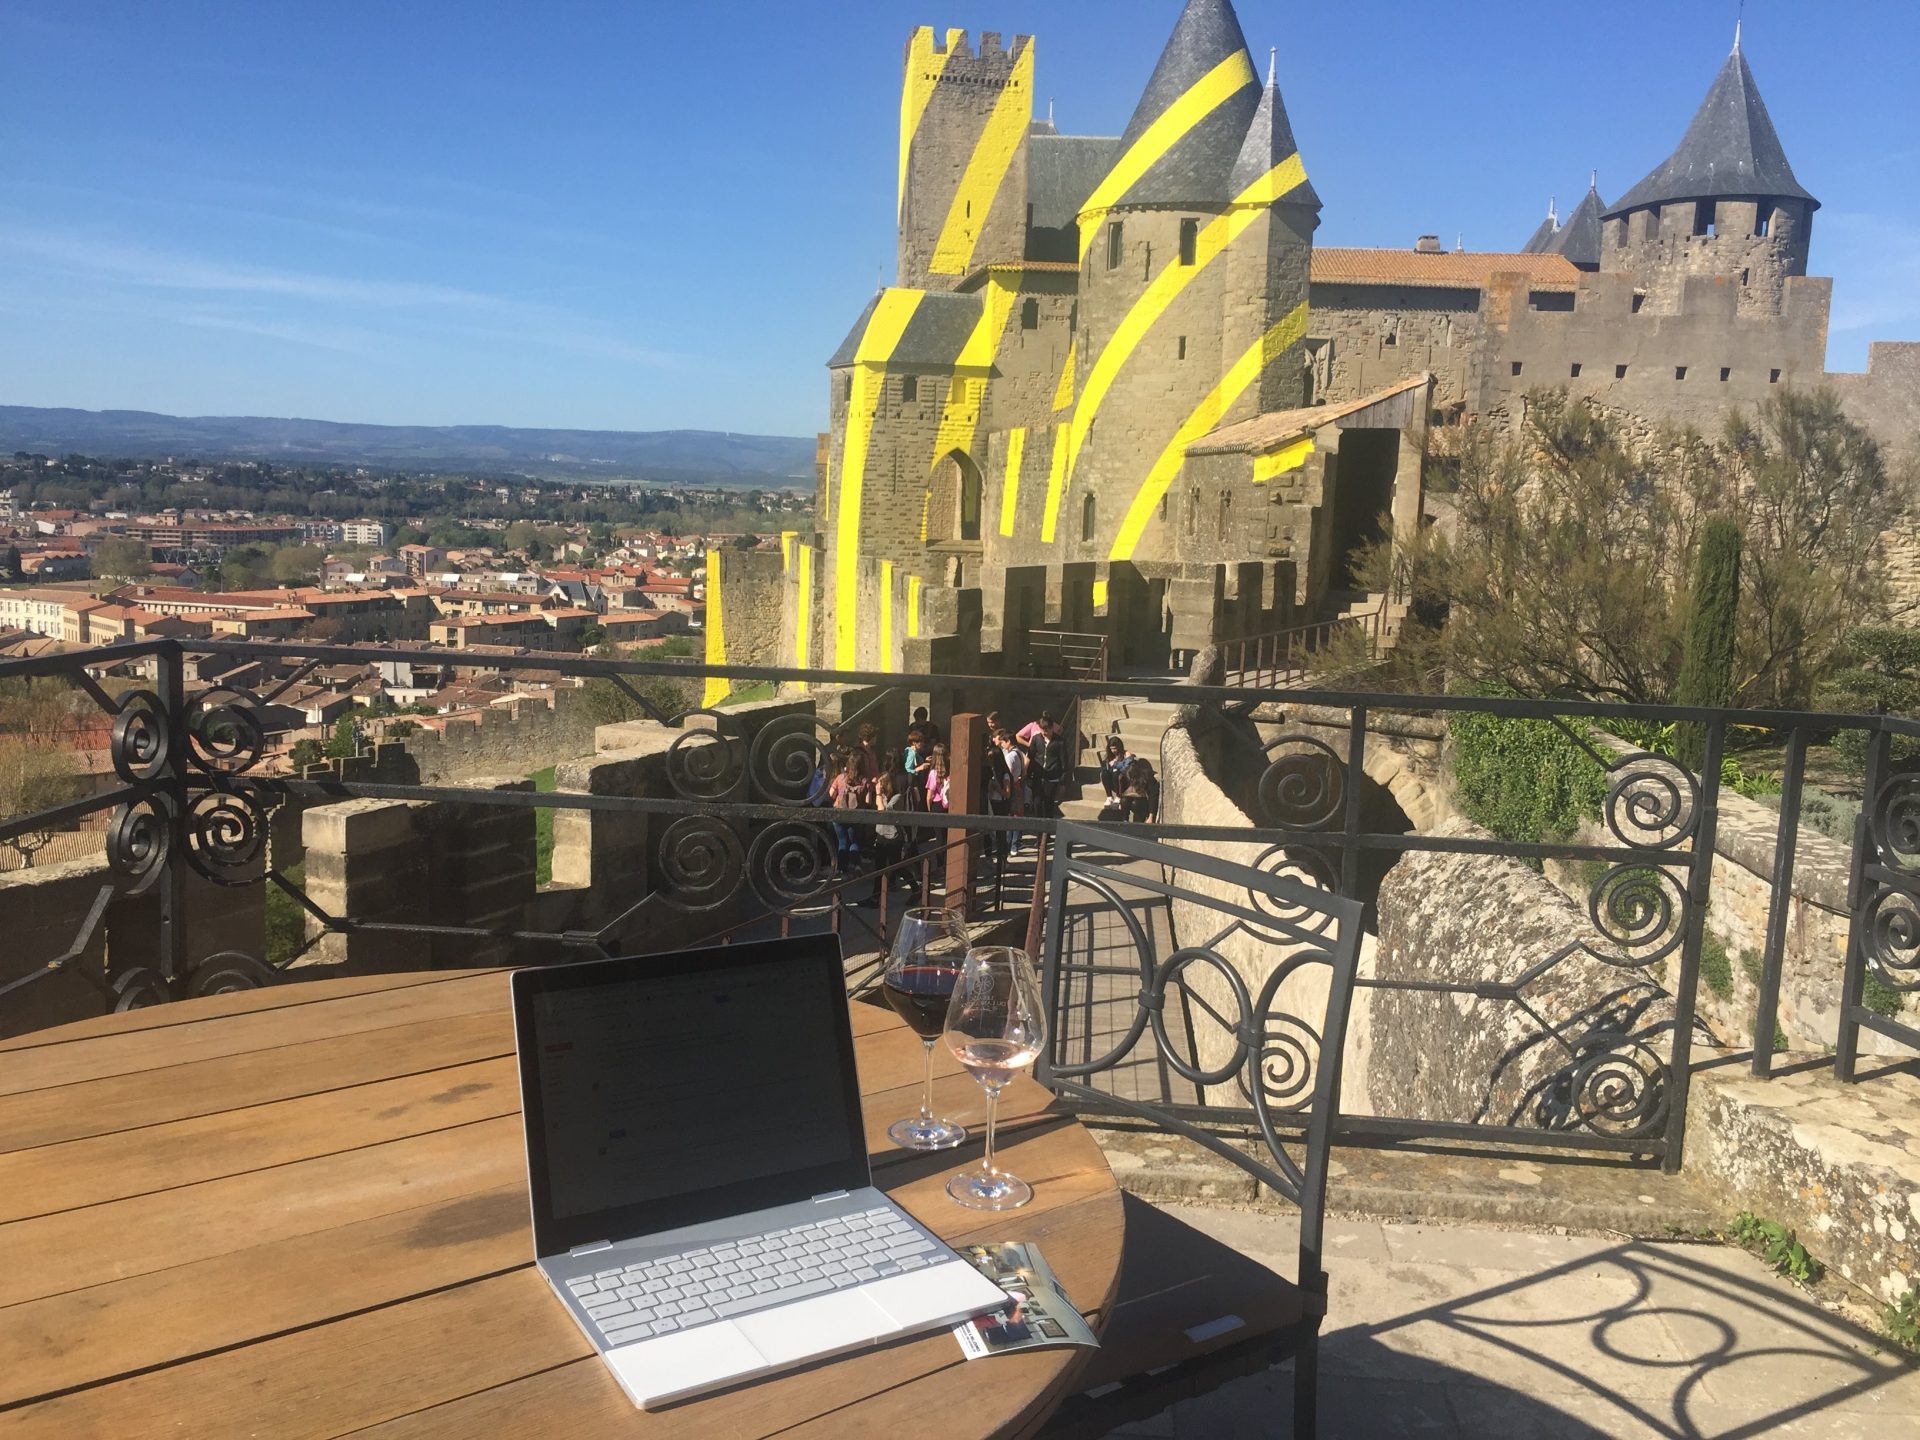 My office at Hotel de La Cité, Carcassonne, overlooking the rather special castle of Carcassonne.